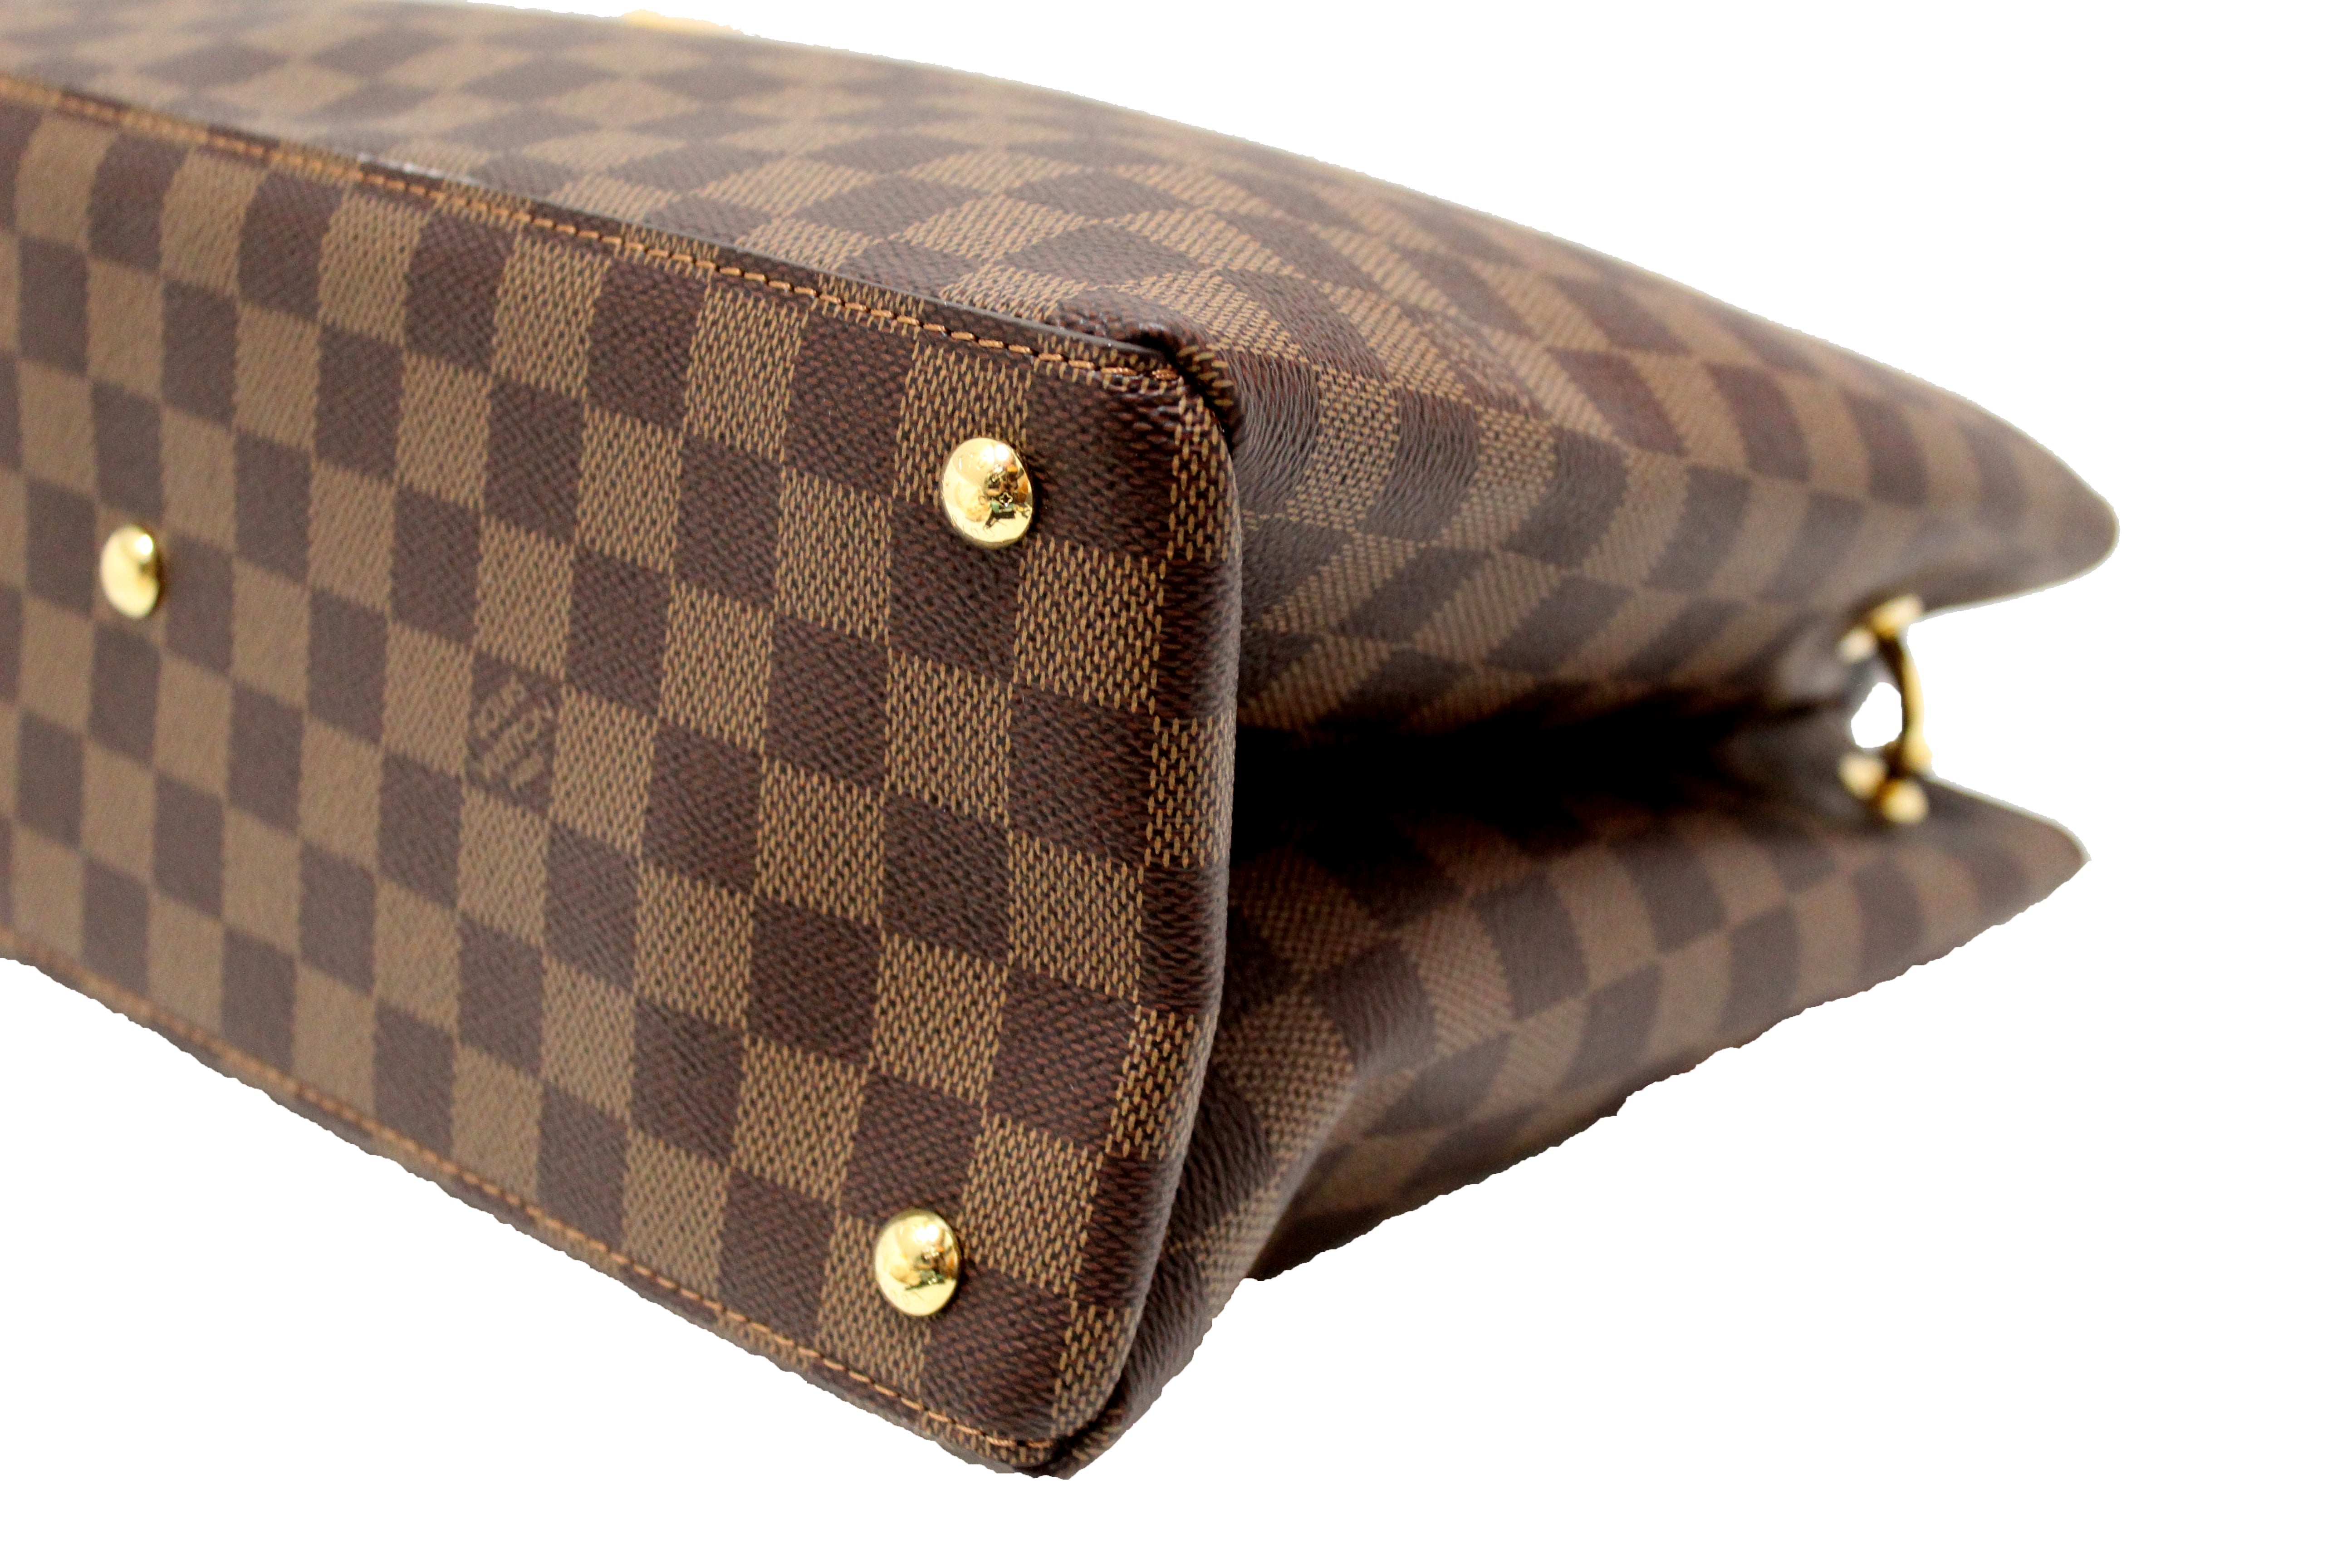 Shop Louis Vuitton DAMIER GRAPHITE Canvas Leather Bags by rouge-blason